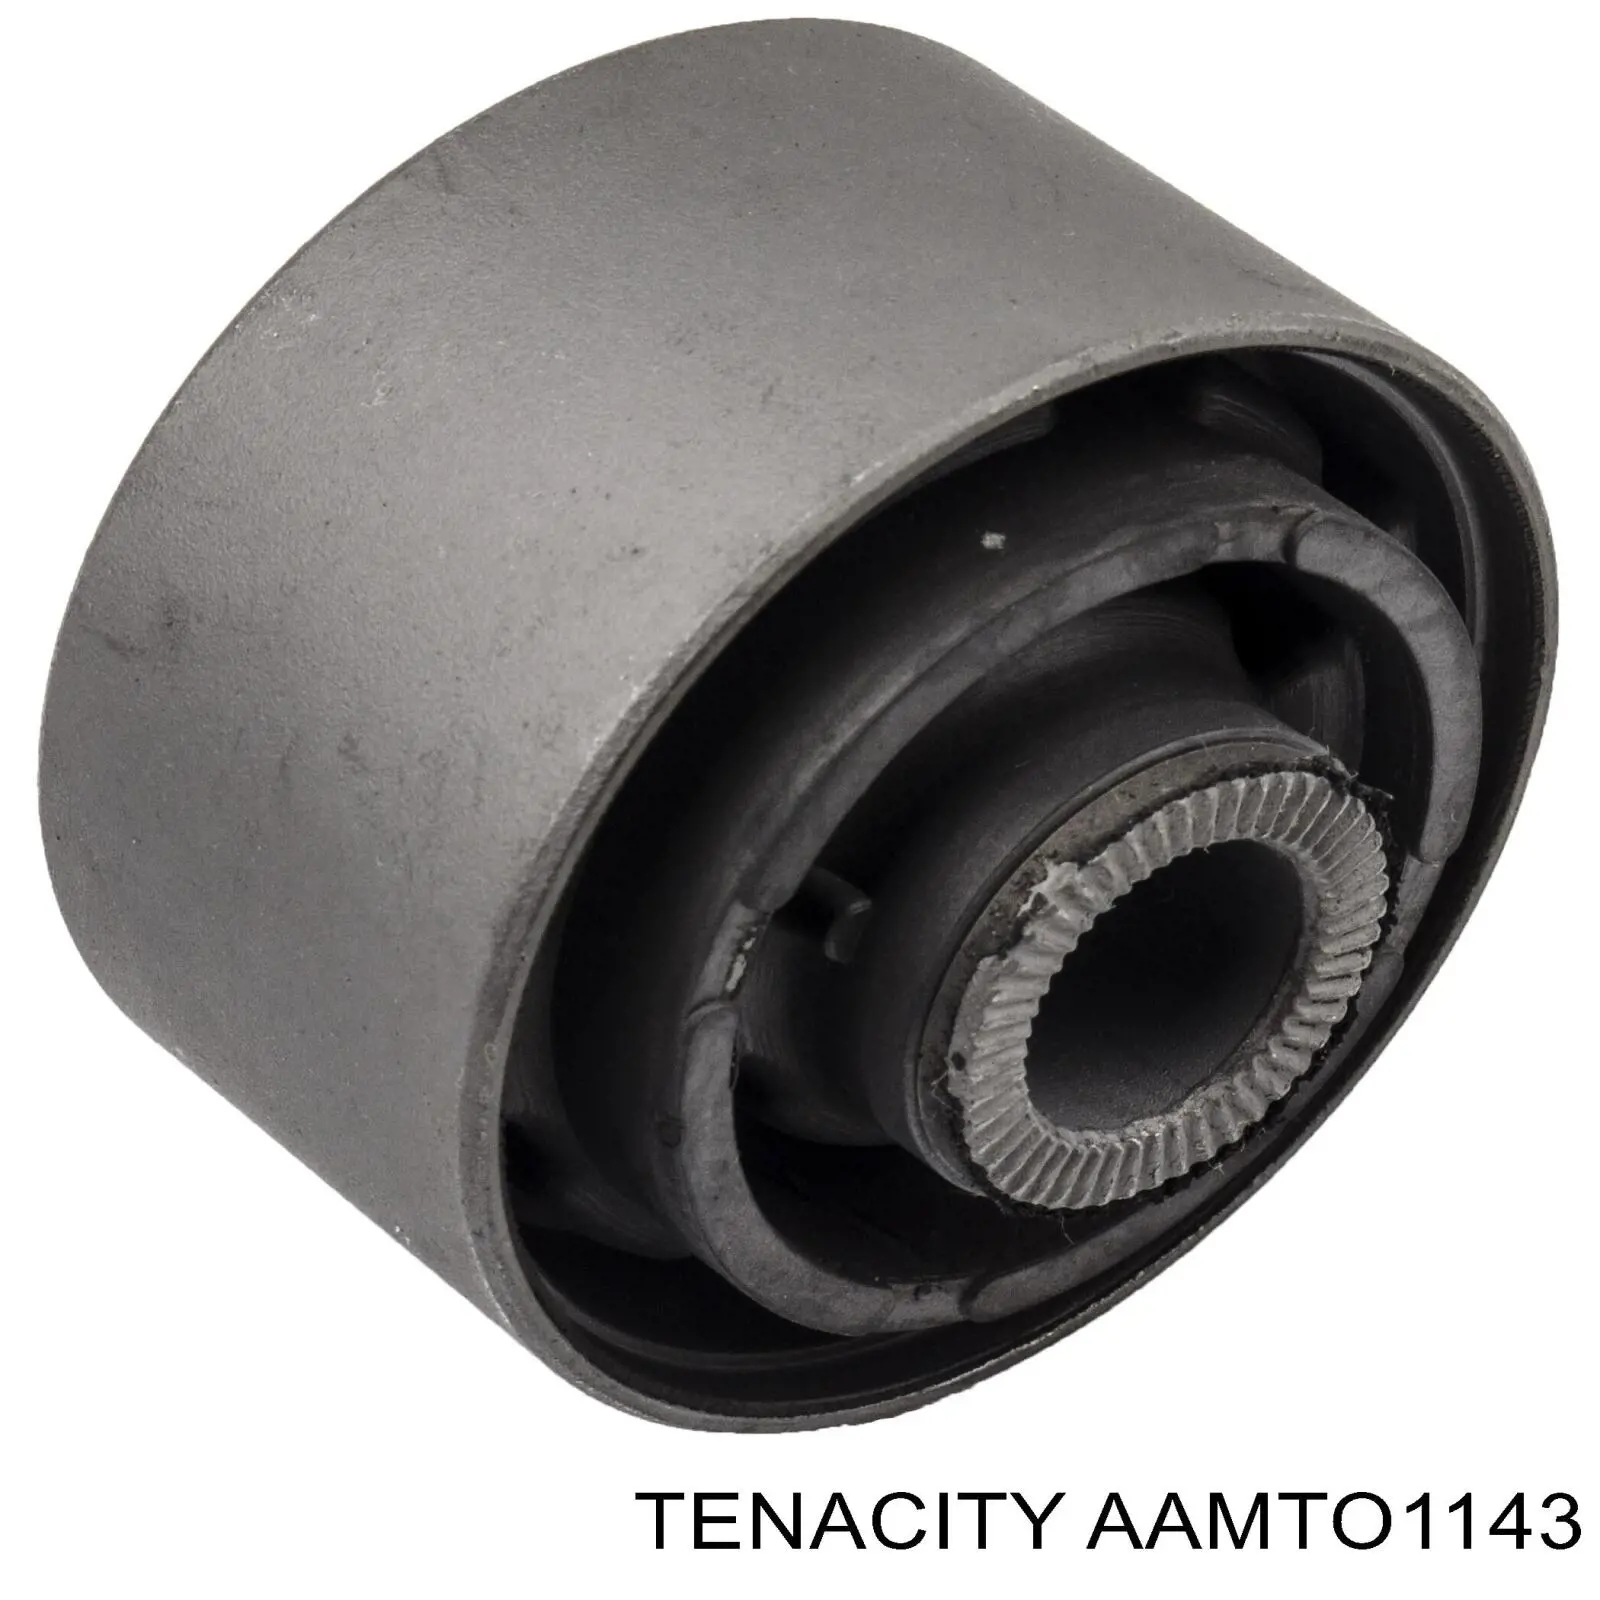 AAMTO1143 Tenacity silentblock delantero de ballesta delantera